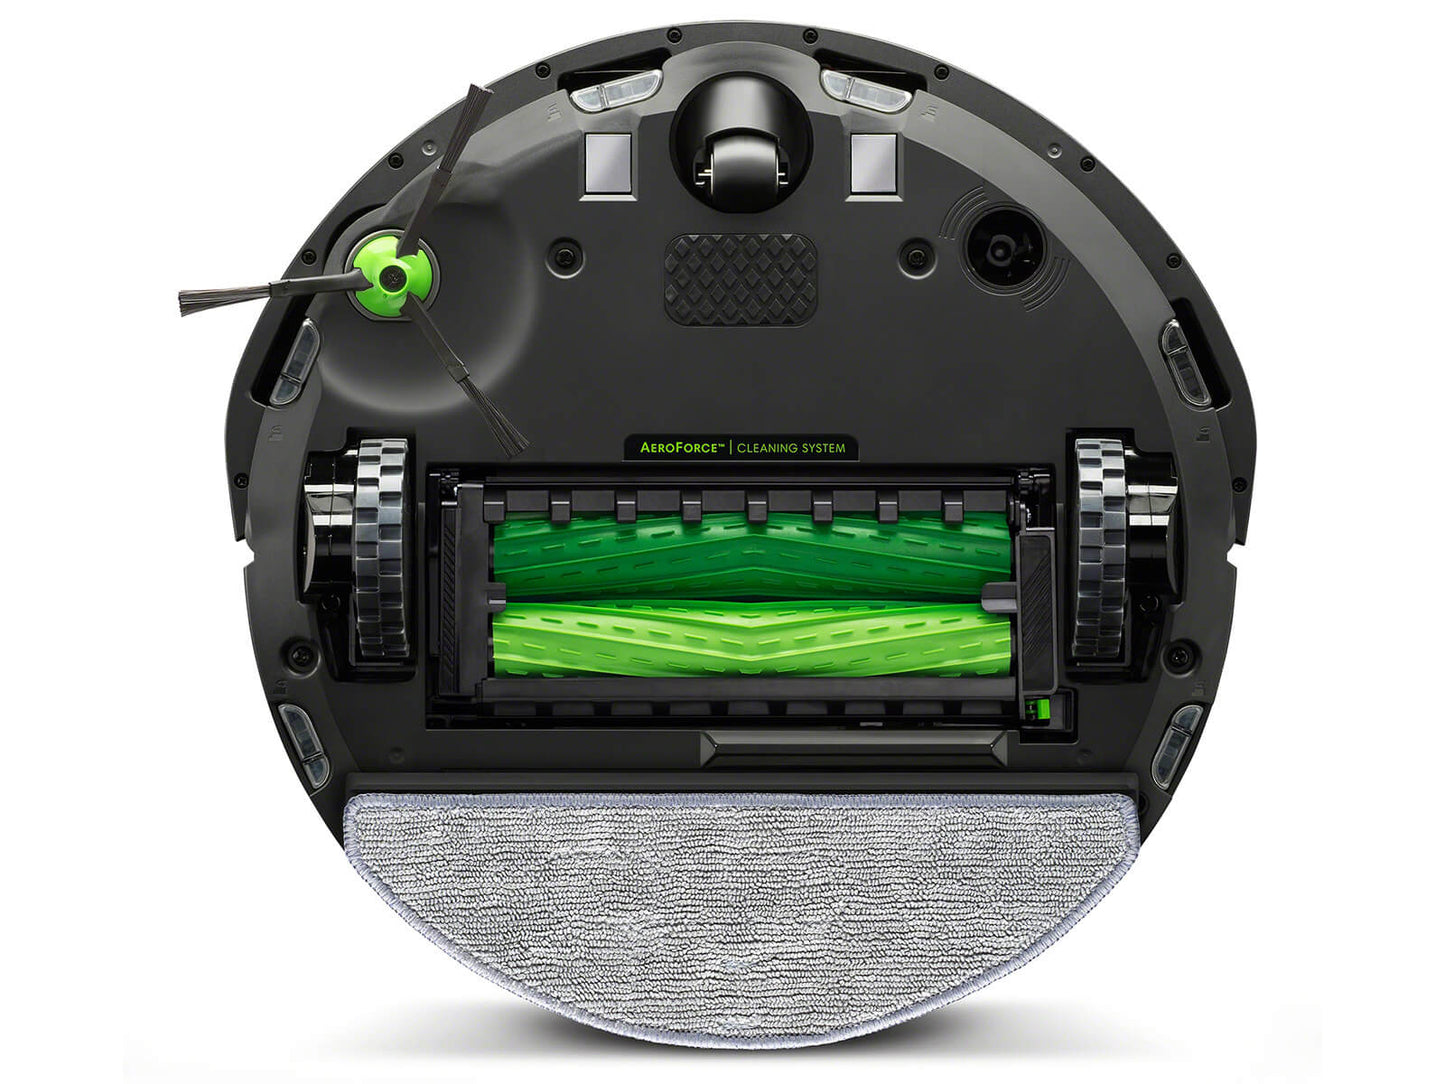 Roomba Combo® i8+